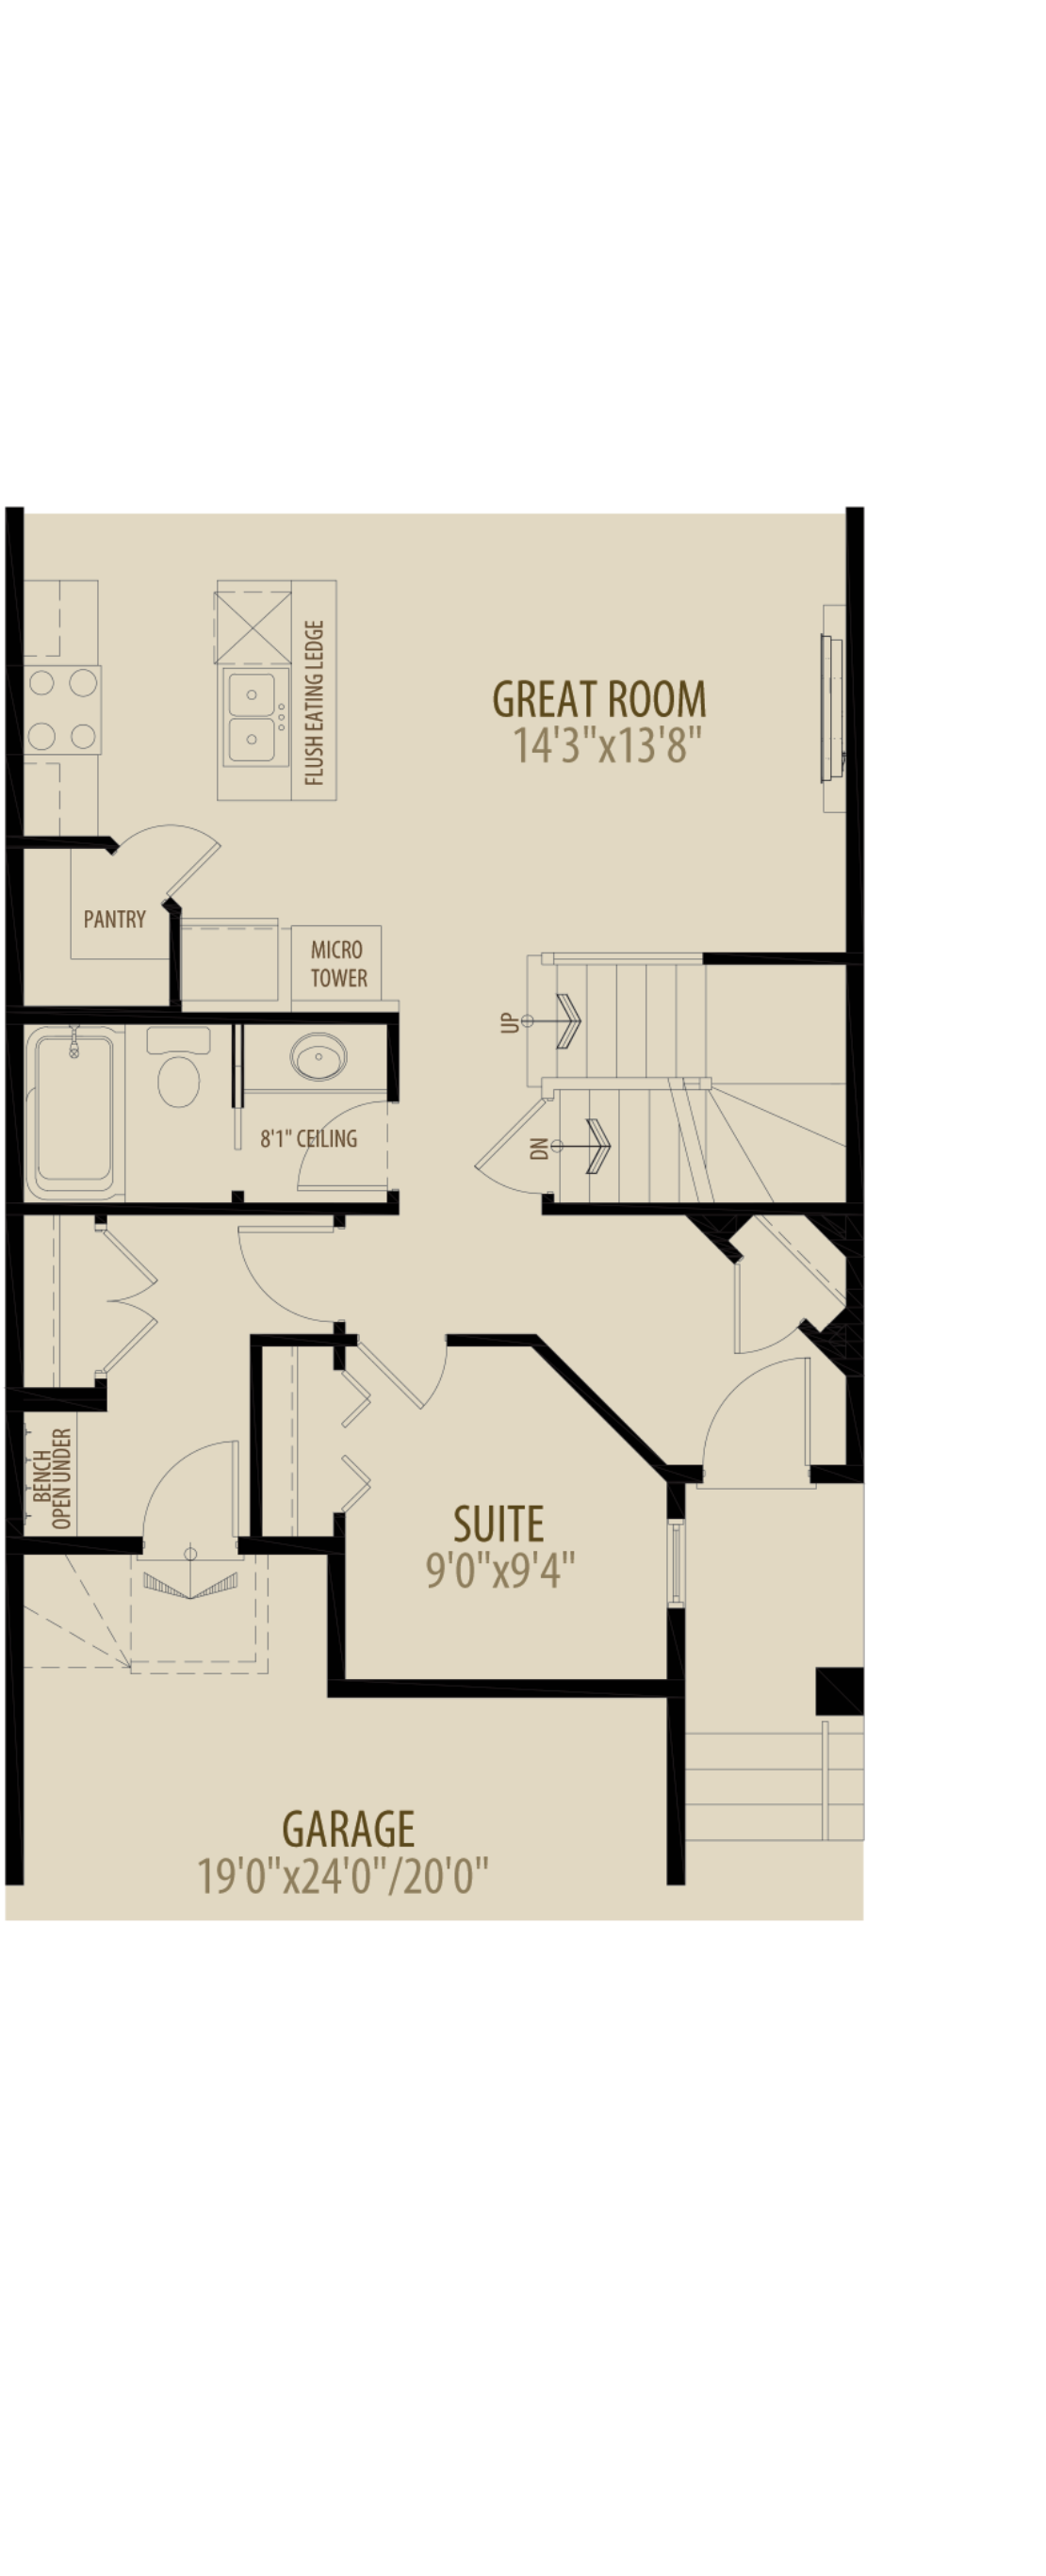 Main Floor Suite Adds 40 sq ft